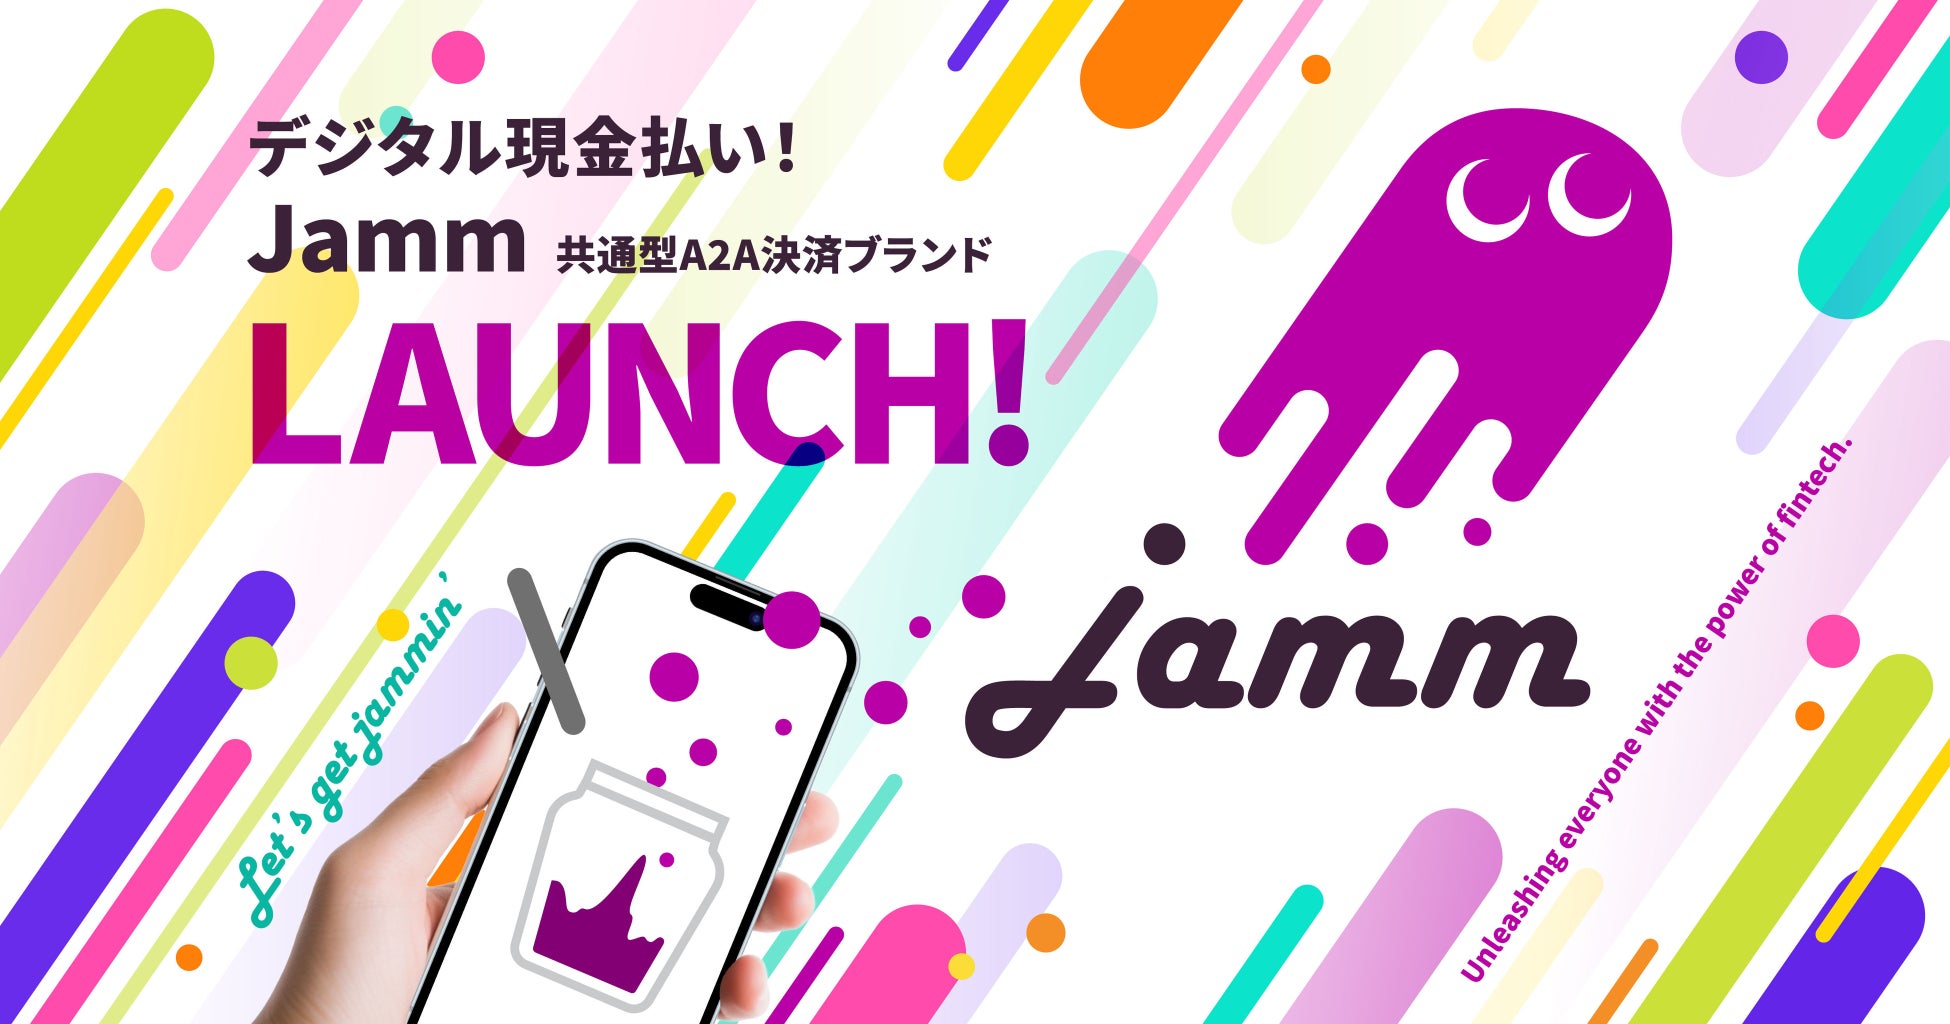 決済ムーブメントJamm（ジャム）、決済手数料1.8%のA2A決済ブランド「デジタル現金払い！Jamm」をリリース